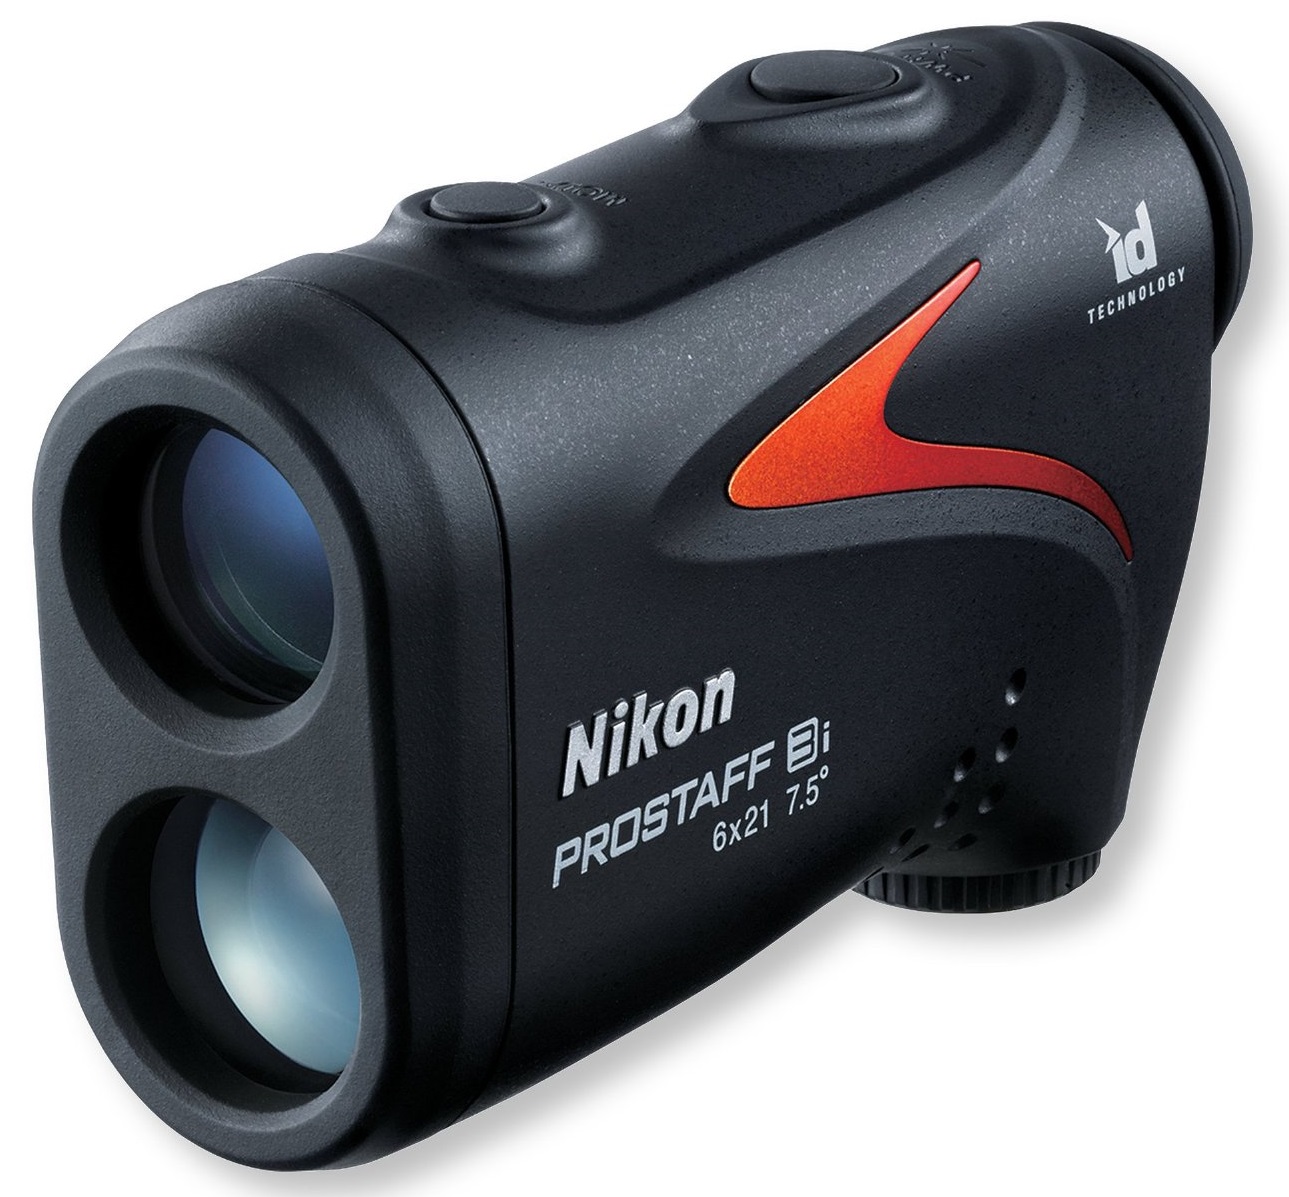 Nikon Golf Digital Laser Range Finders